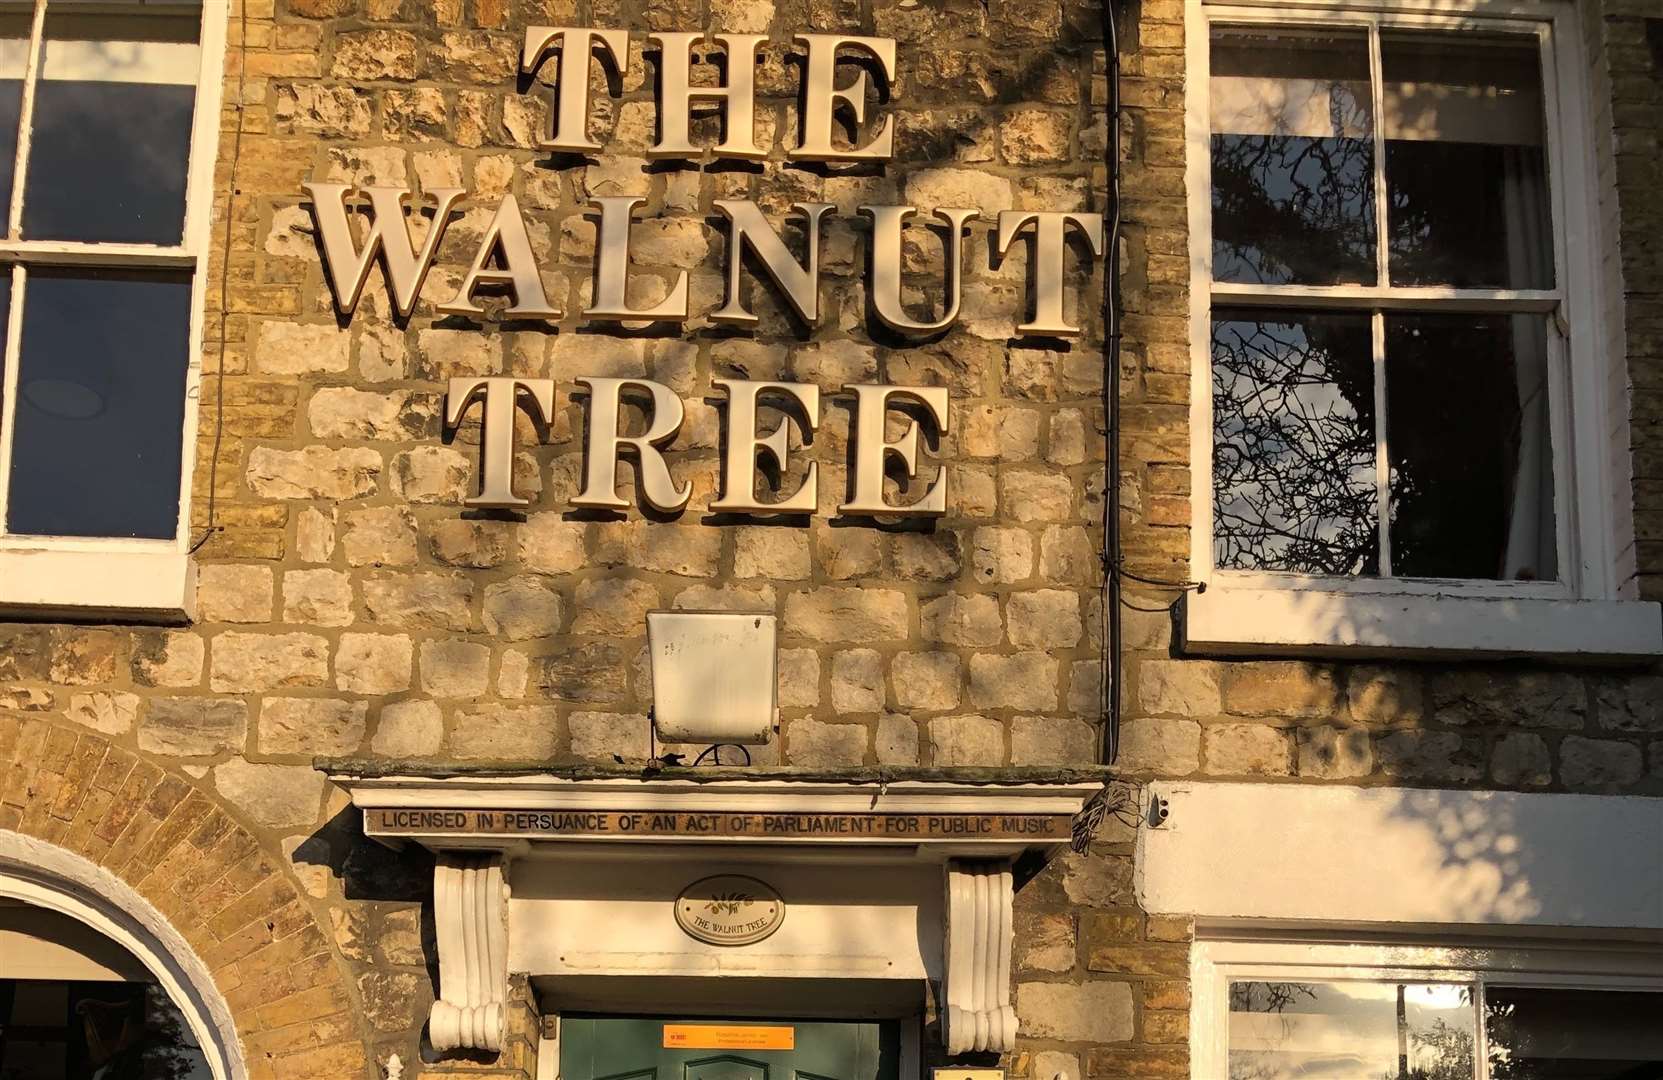 The Walnut Tree.